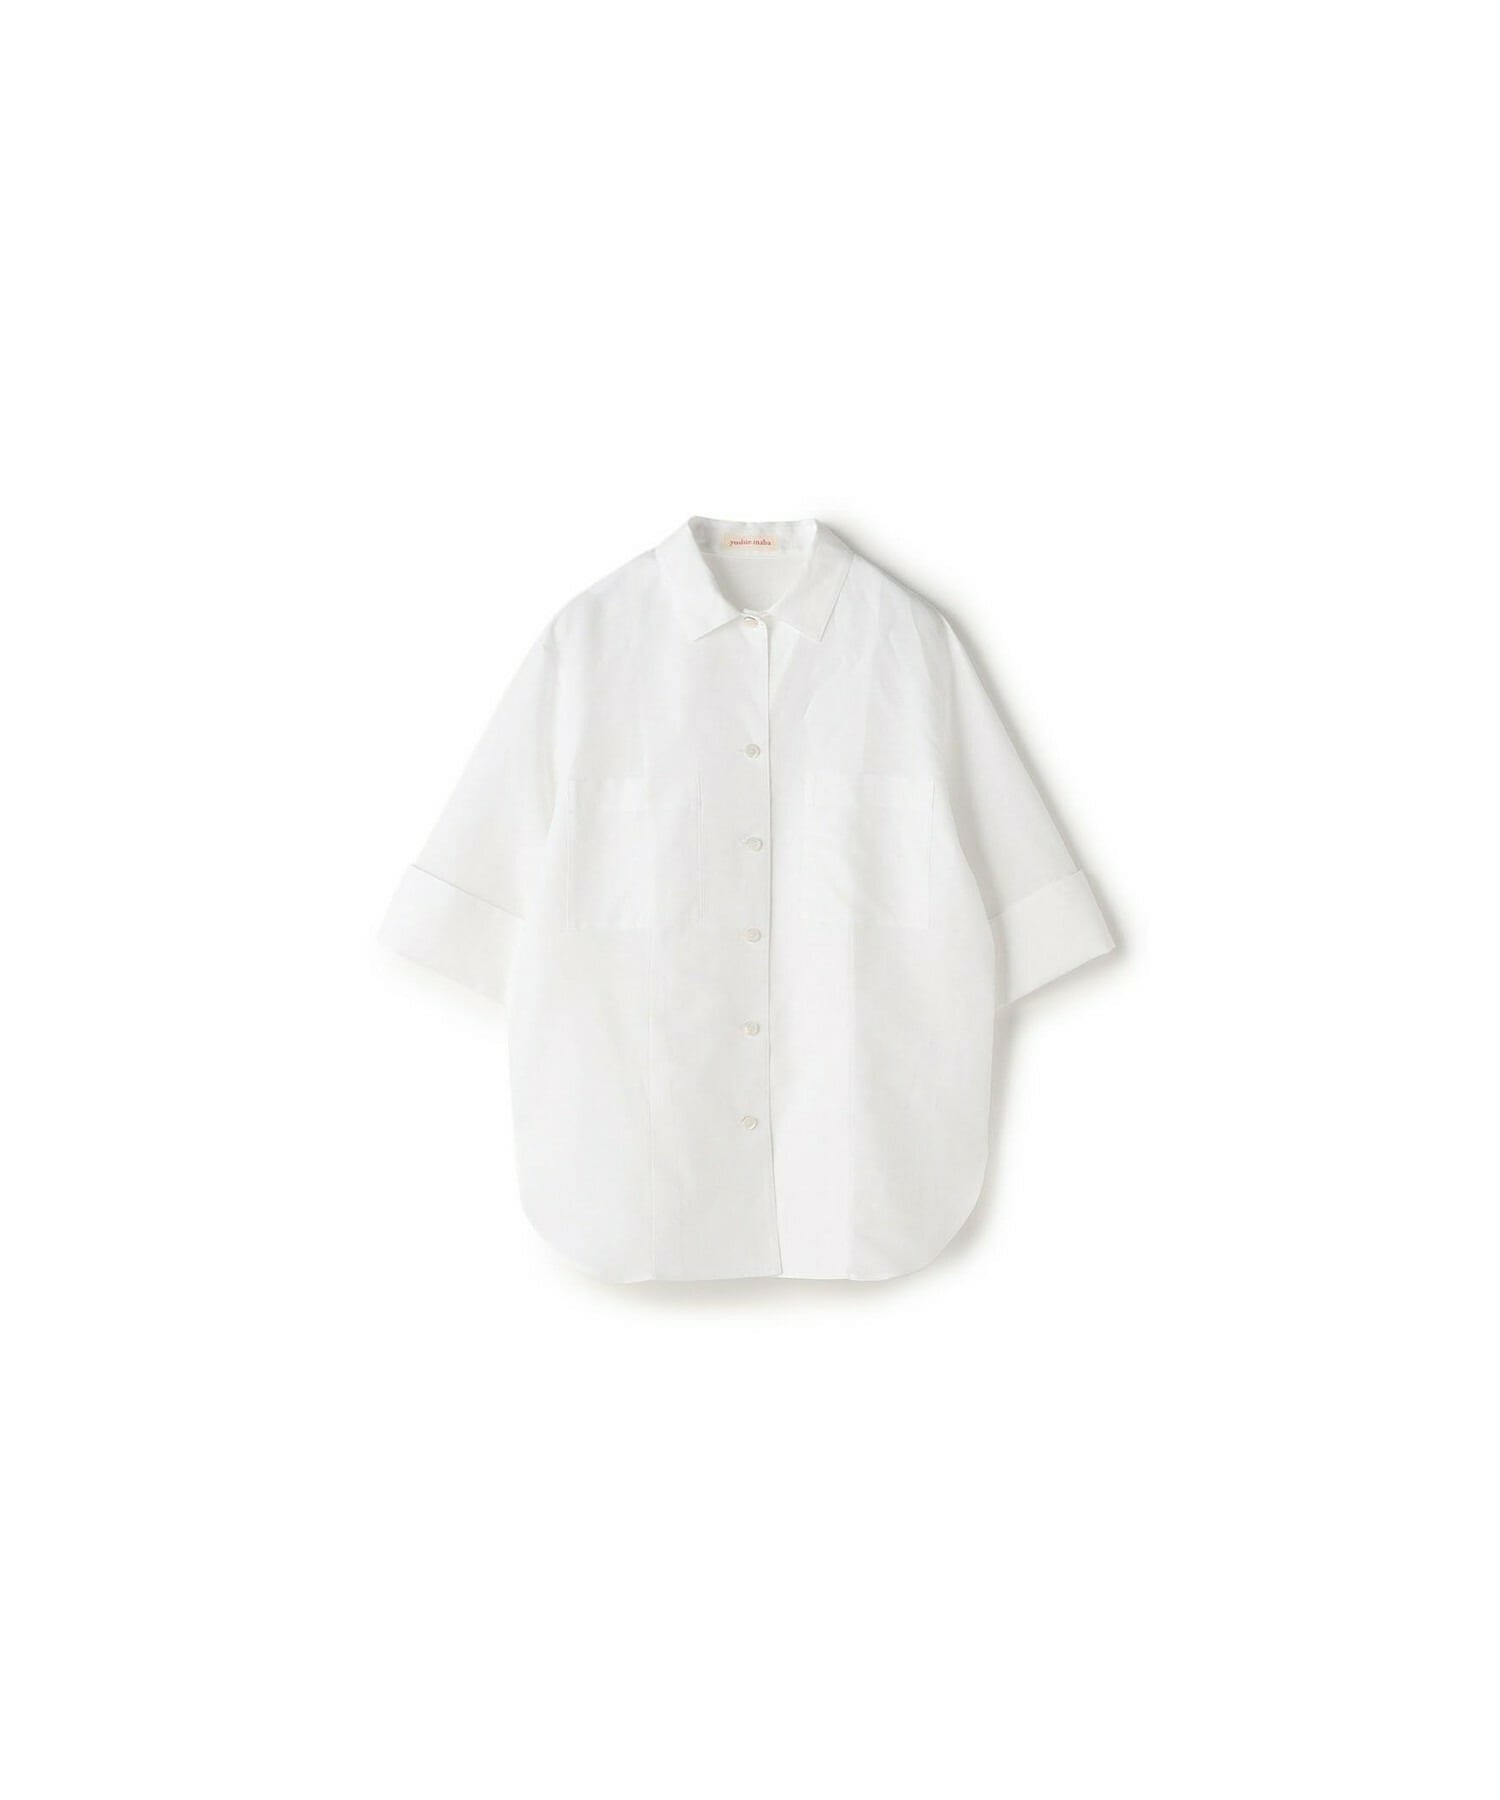 【yoshie inaba】リネンコットンデザインシャツ 詳細画像 ホワイト 1